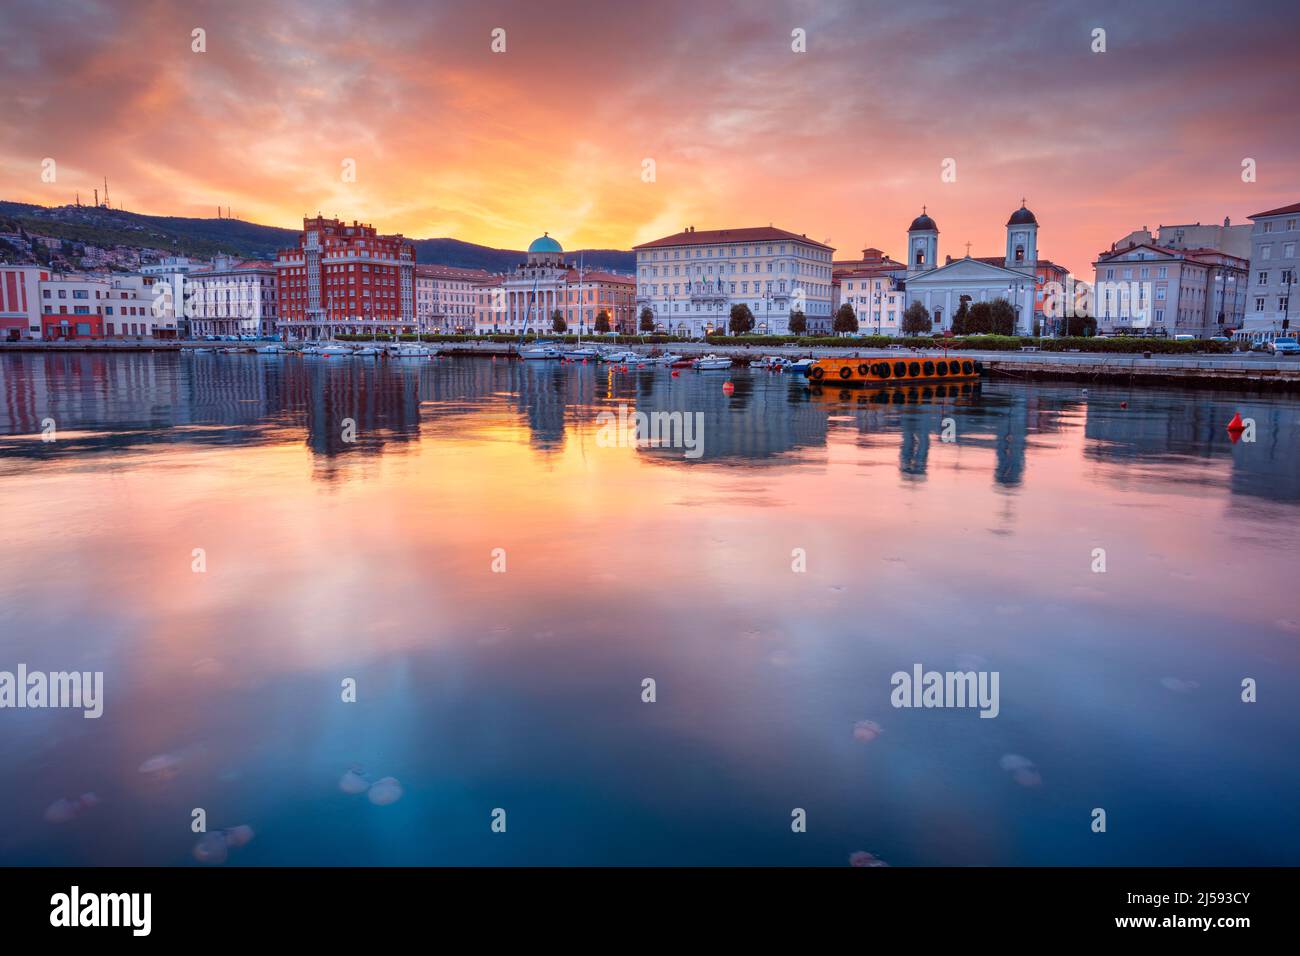 Trieste, Italia. Immagine del paesaggio urbano del centro di Trieste, Italia all'alba drammatica. Foto Stock